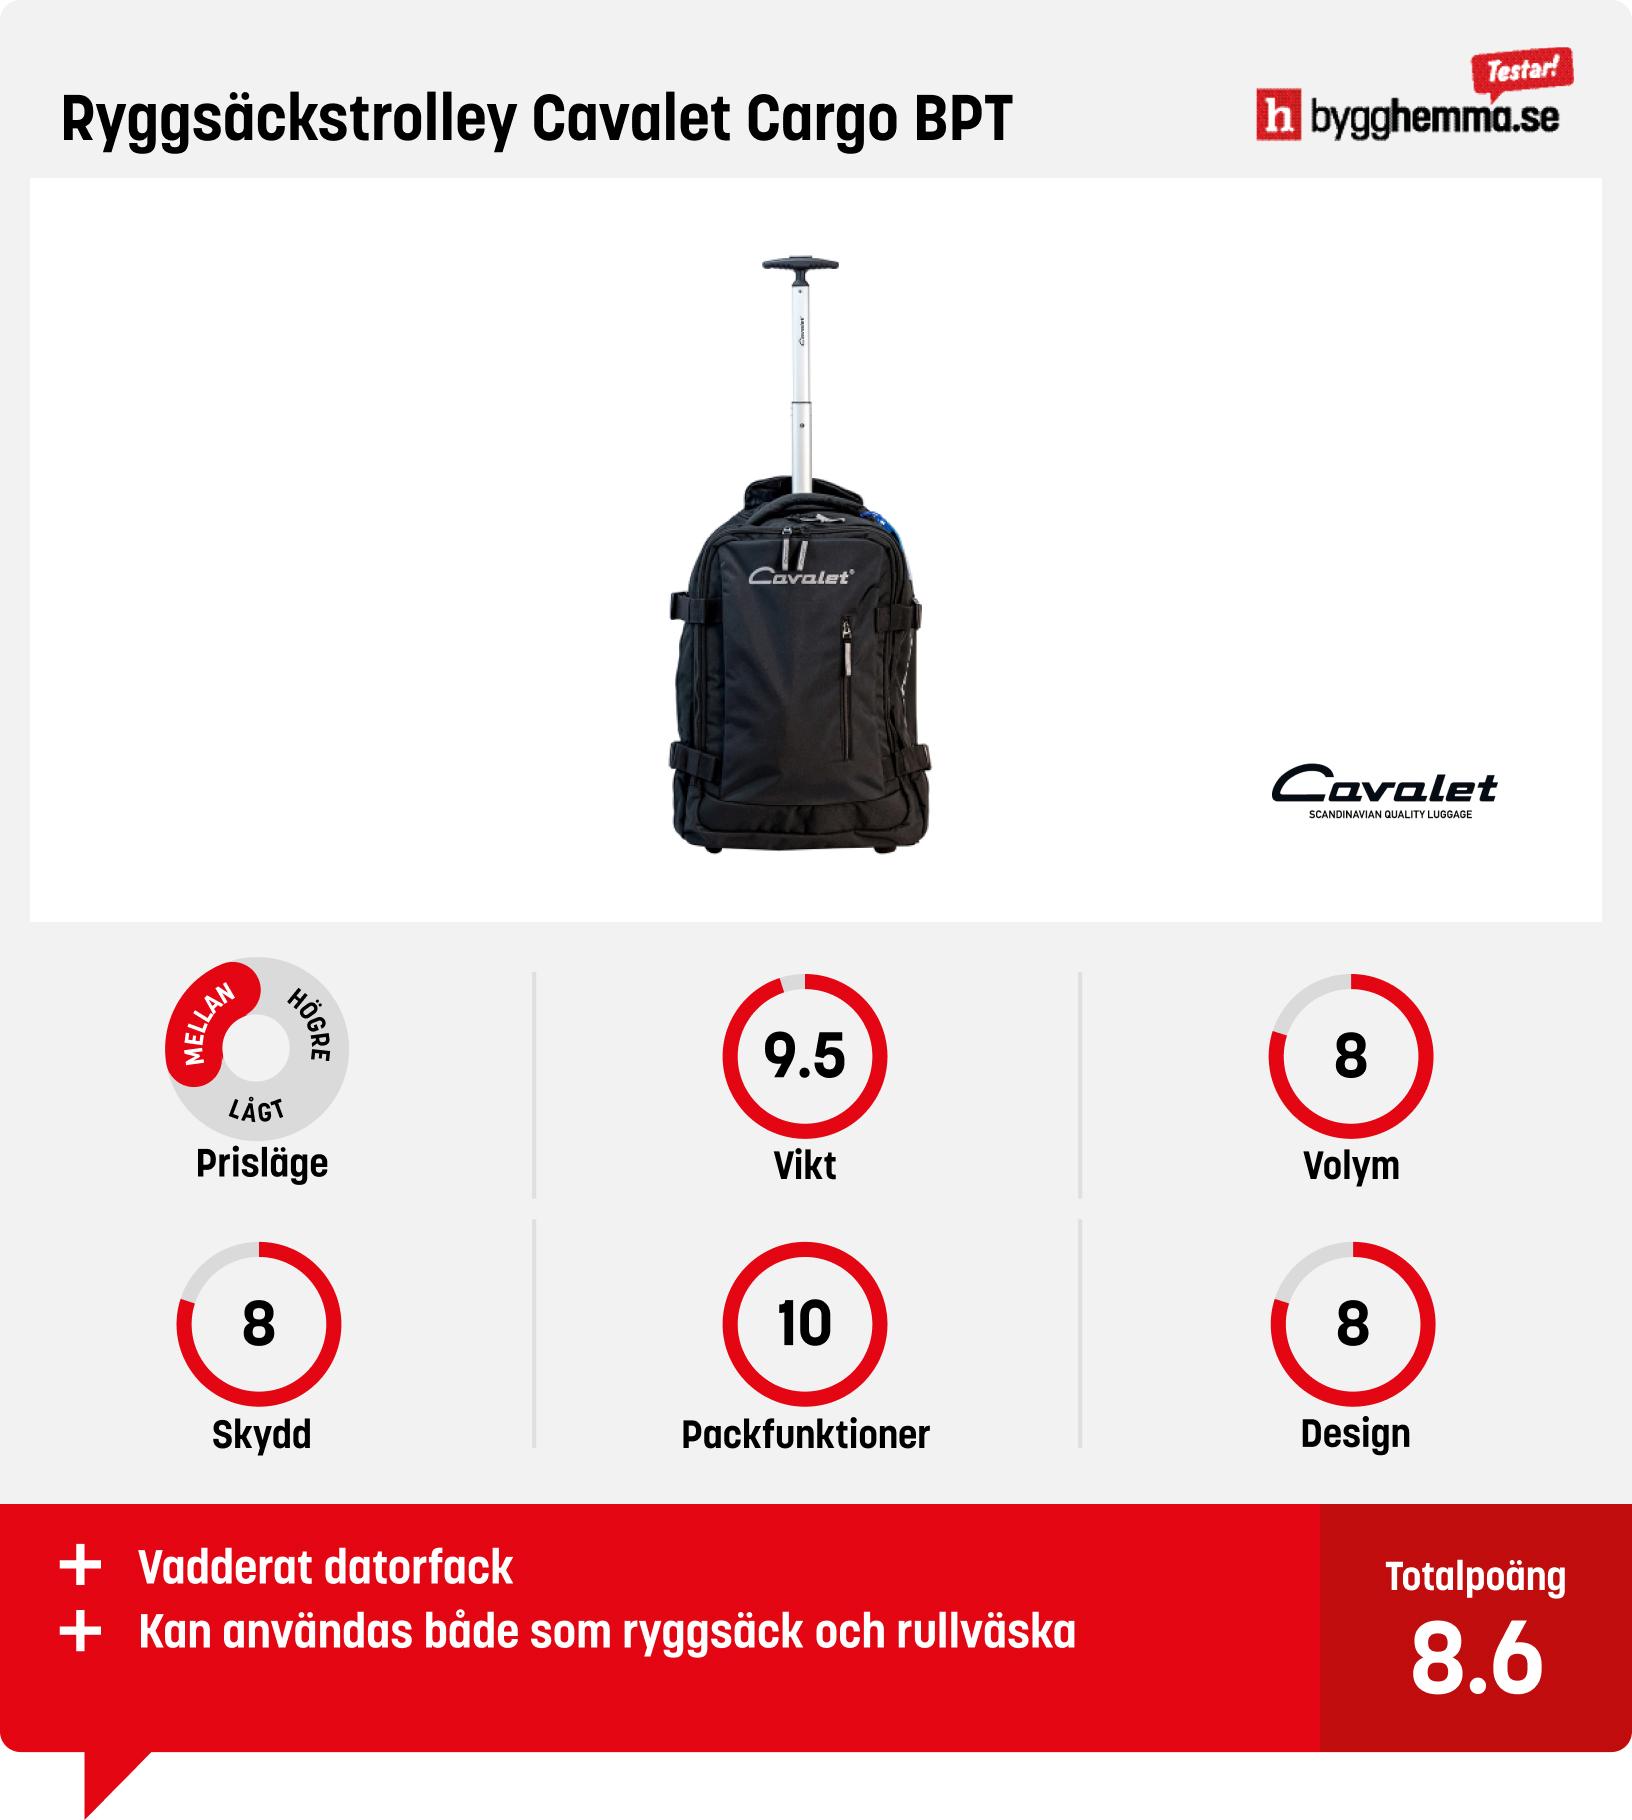 Kabinväska bäst i test - Ryggsäckstrolley Cavalet Cargo BPT